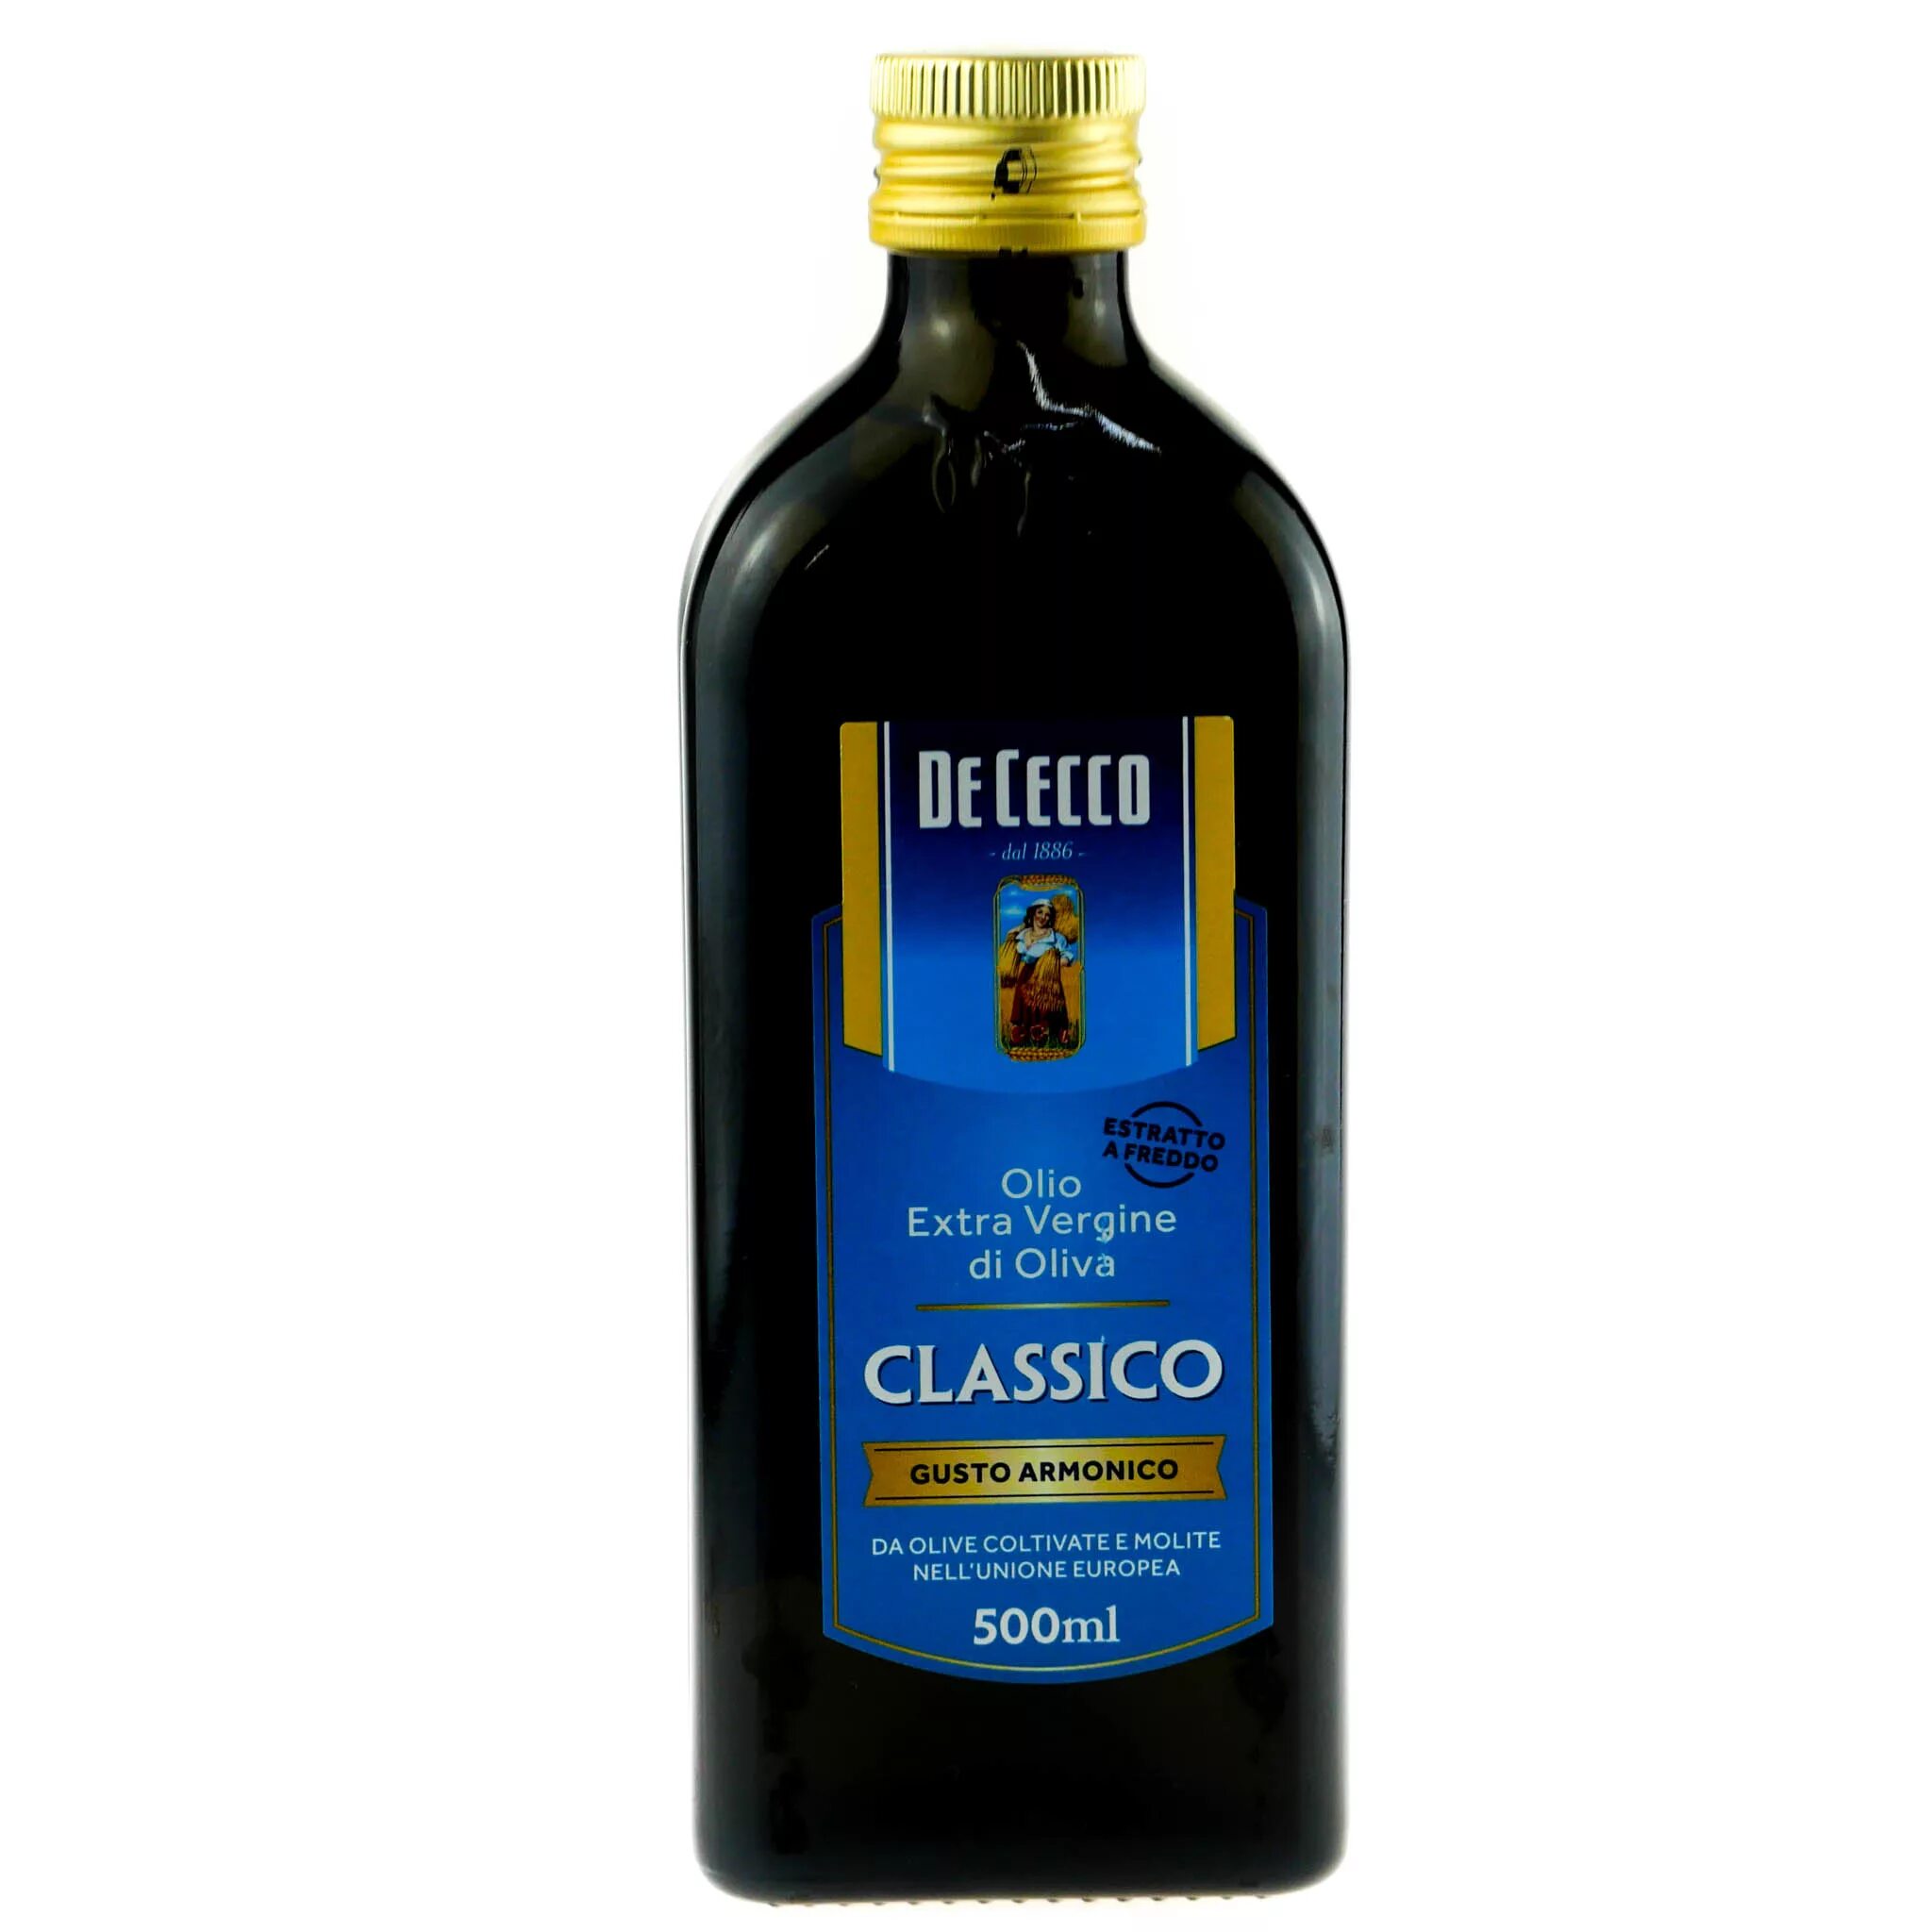 Масло оливковое de Cecco, 500 мл.. De Cecco оливковое нерафинированное 500мл. Масло оливковое de Cecco Extra vergine, 0,5л. Оливковое масло de Cecco Classico 500мл маркировка. Беру оливковое масло